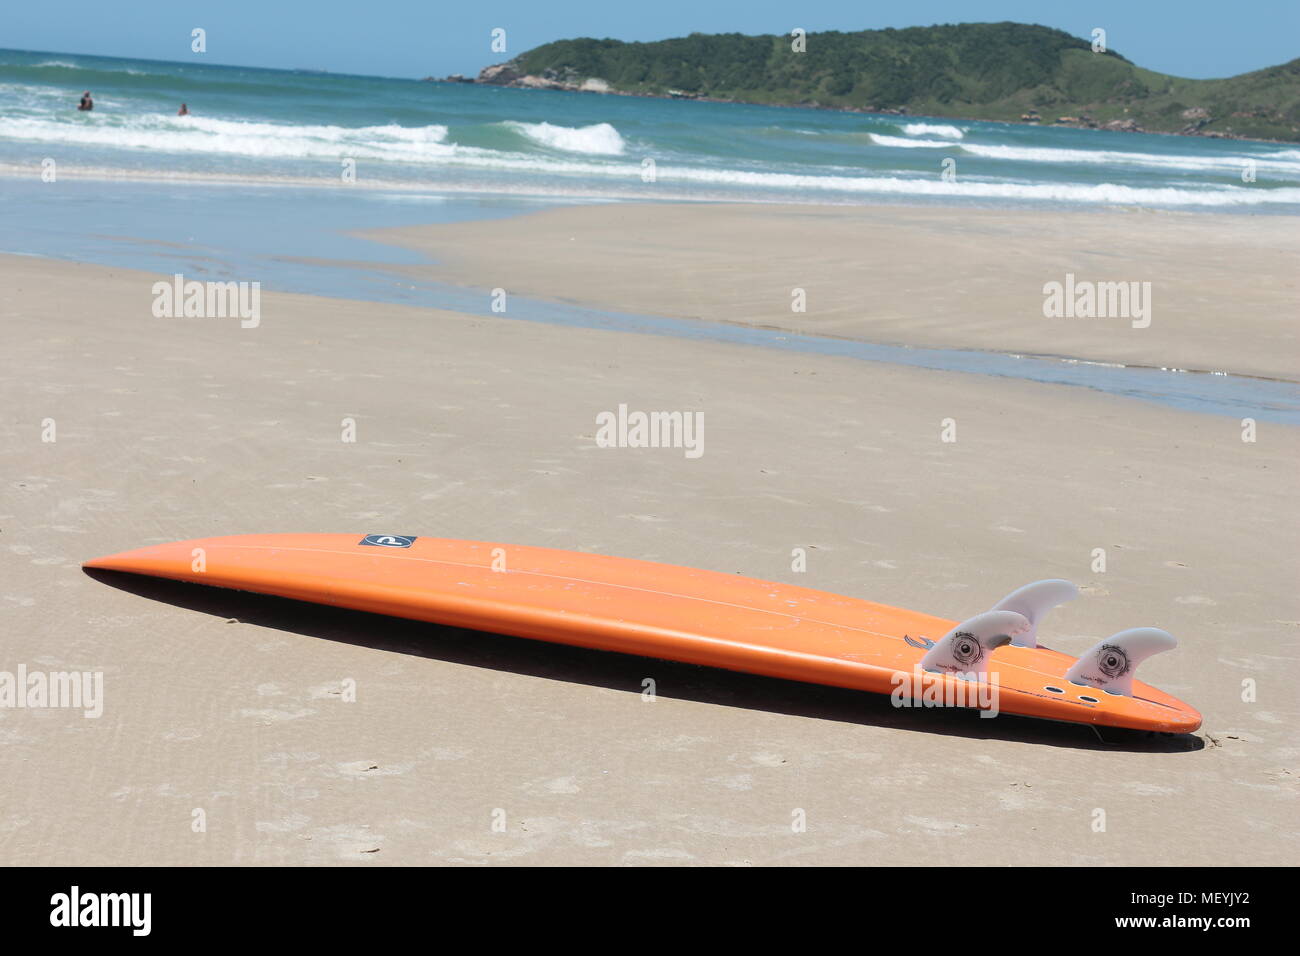 Orange surfen Board liegt an einem Sandstrand mit dem Atlantischen Ozean im Hintergrund, Praia do Rosa, Brasilien Stockfoto